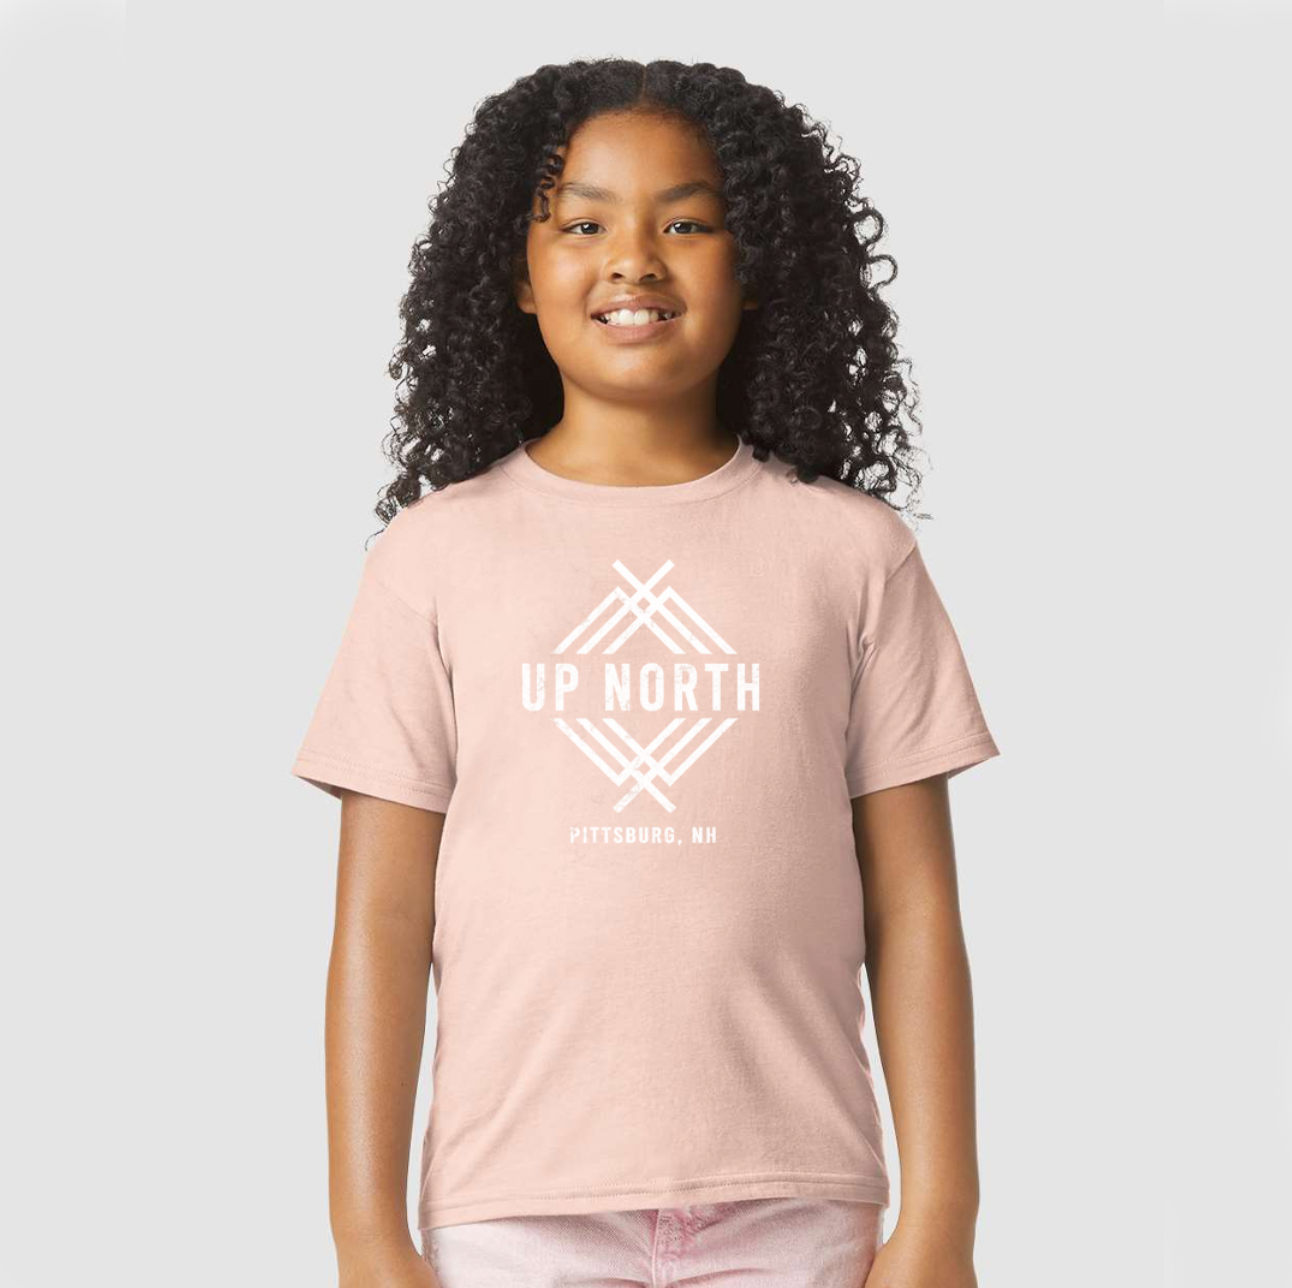 Youth Logo Tee - Blush Pink